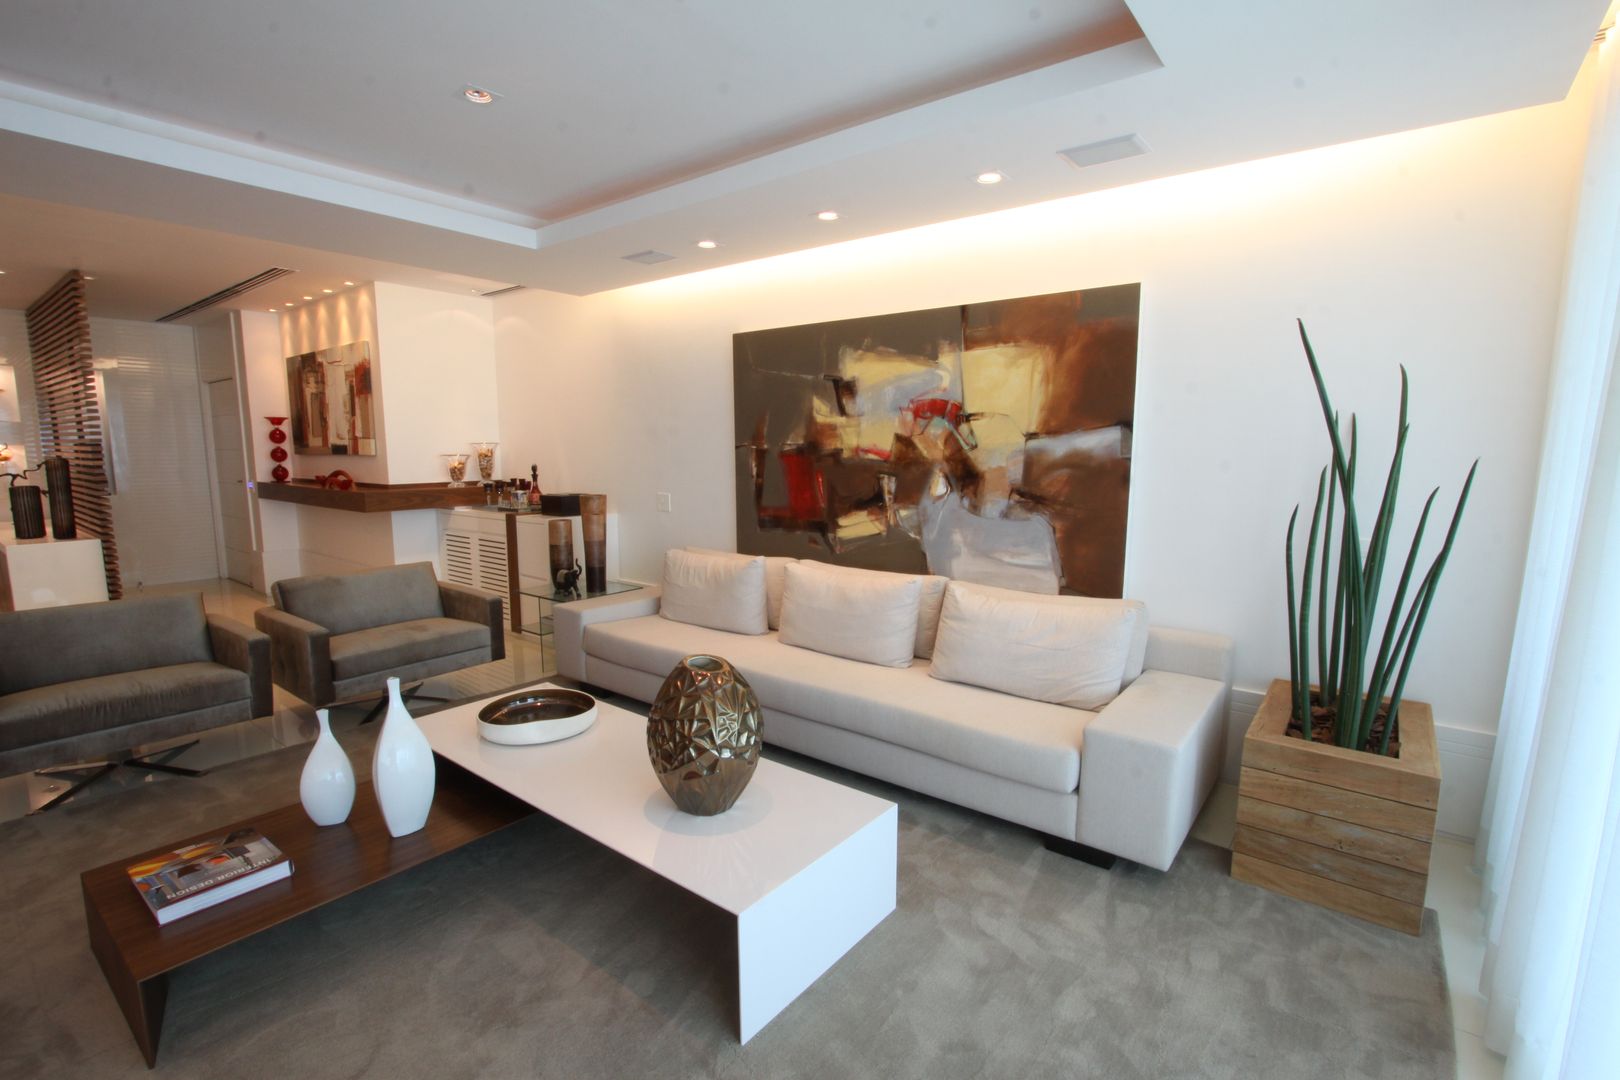 Apartamento Av Lucio Costa - Barra da Tijuca, Arquinovação - Projetos e Obras Arquinovação - Projetos e Obras Modern living room